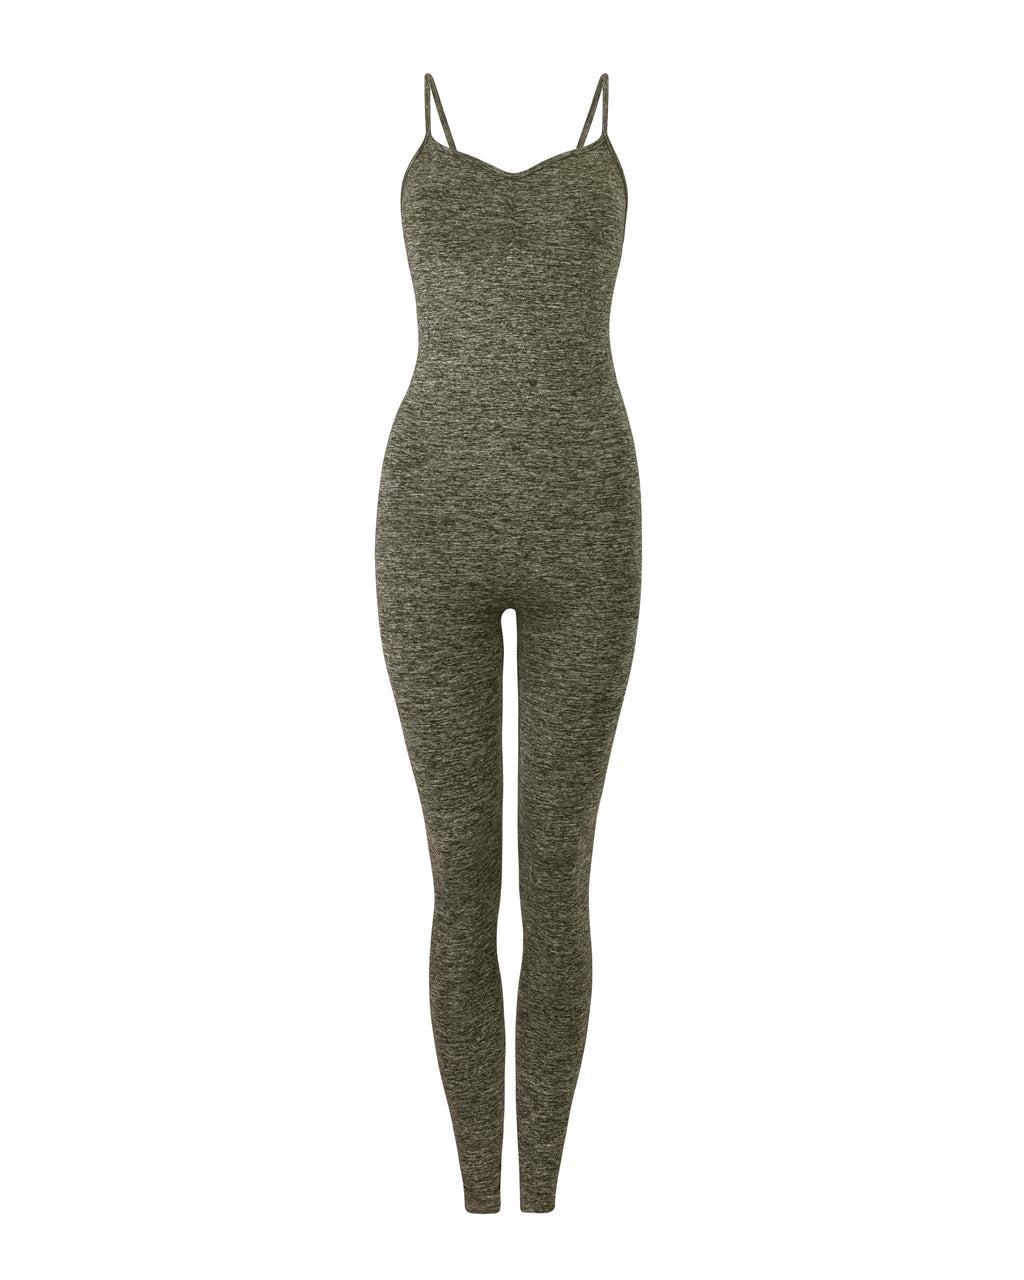 BALANCED Olive Marl Full Body Compression Suit, Sleek Unitard Gym Wear